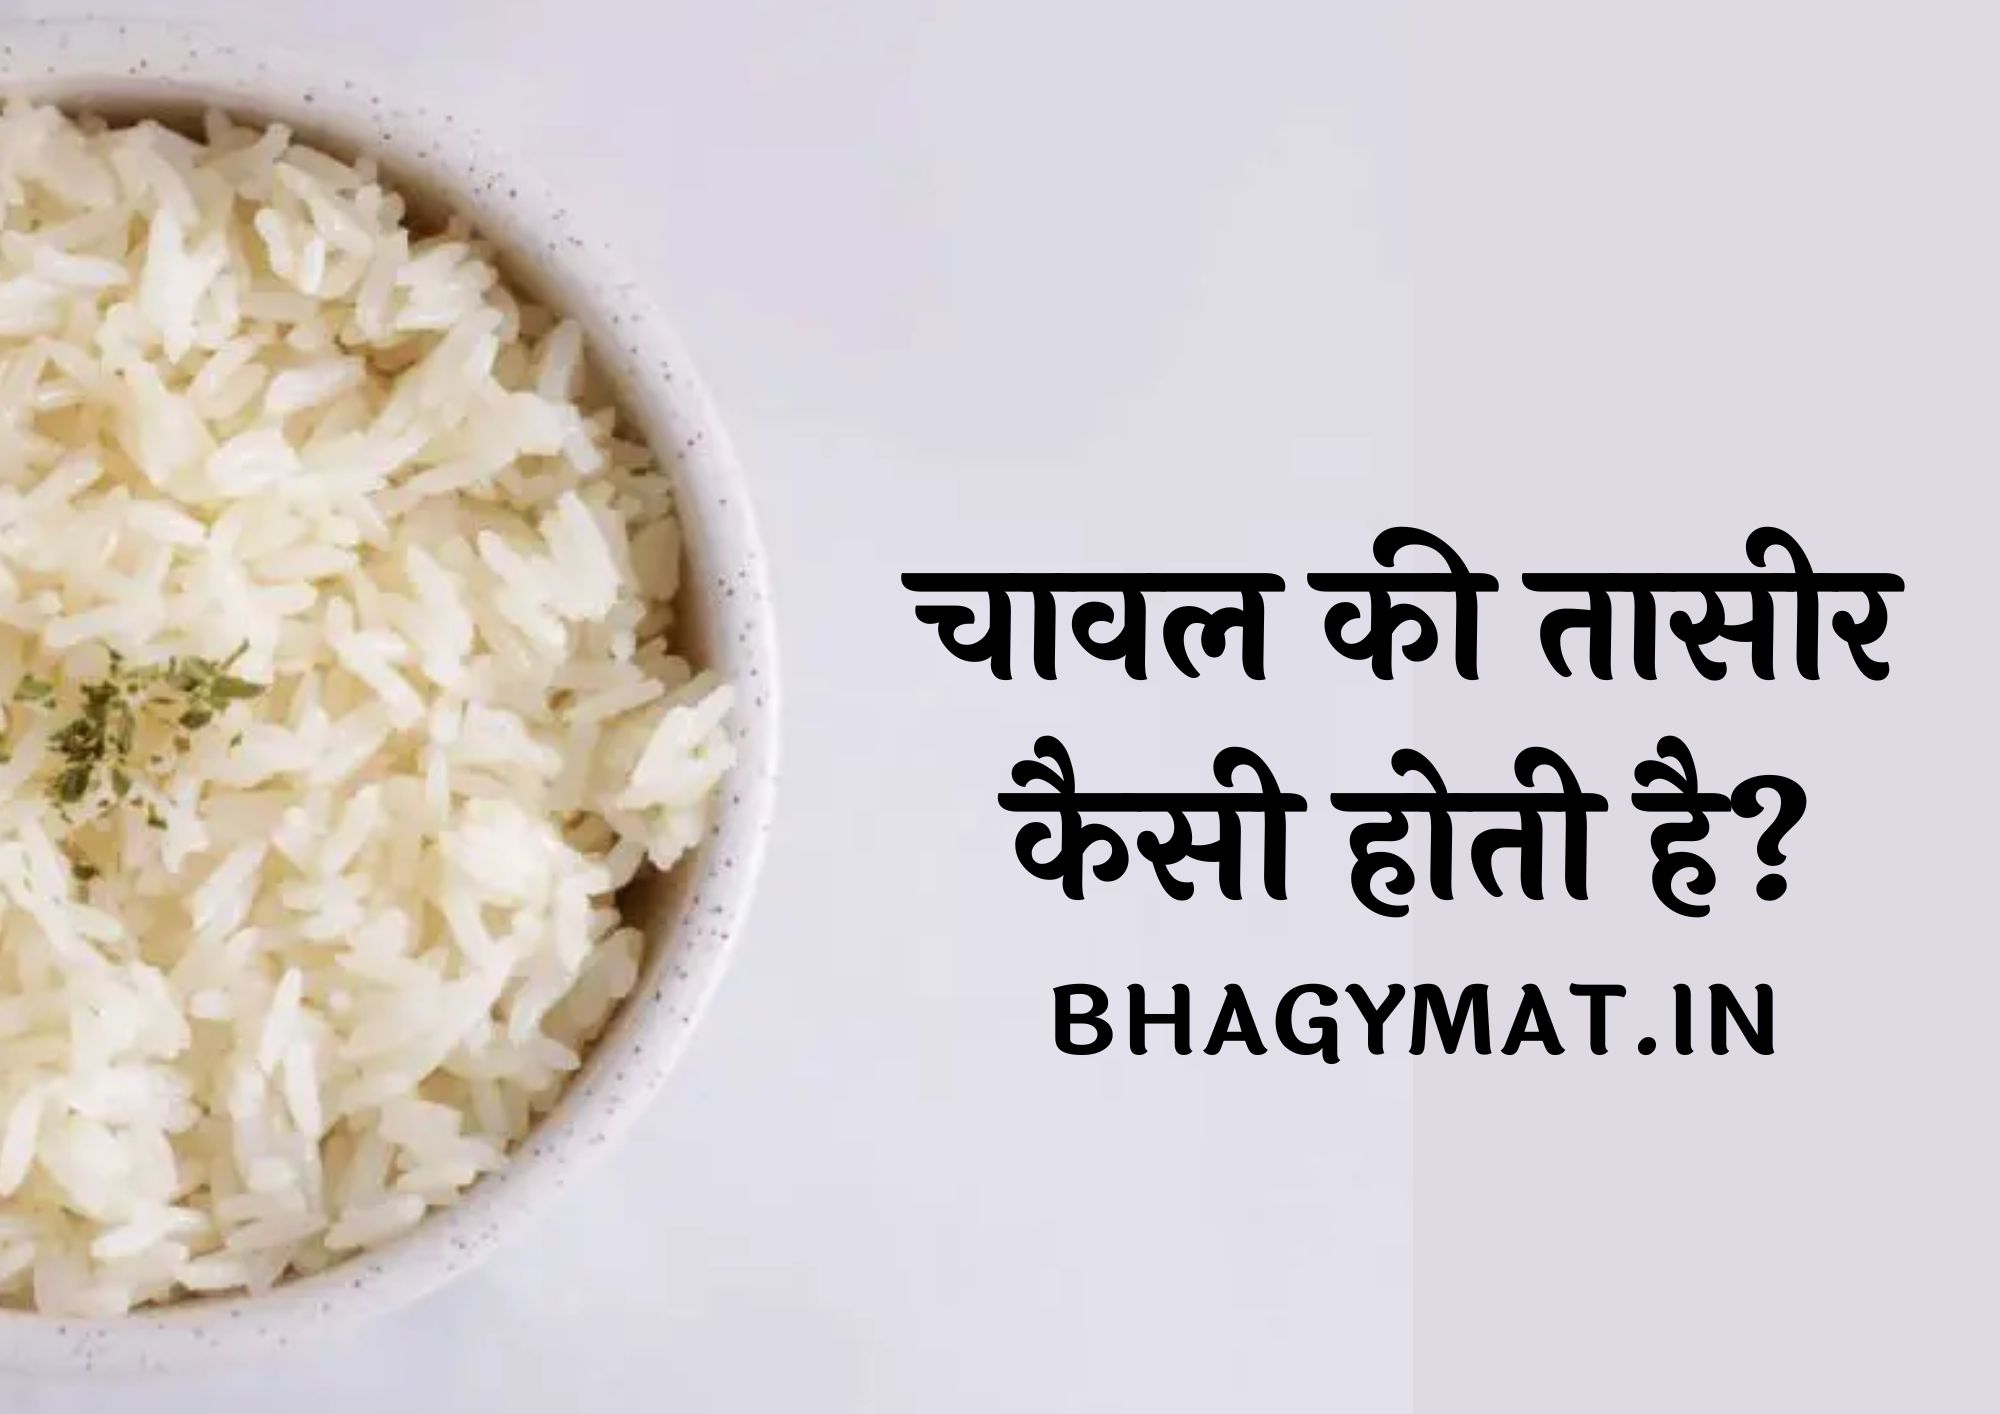 चावल की तासीर कैसी होती है (Chawal Ki Taseer Kaisi Hoti Hai)